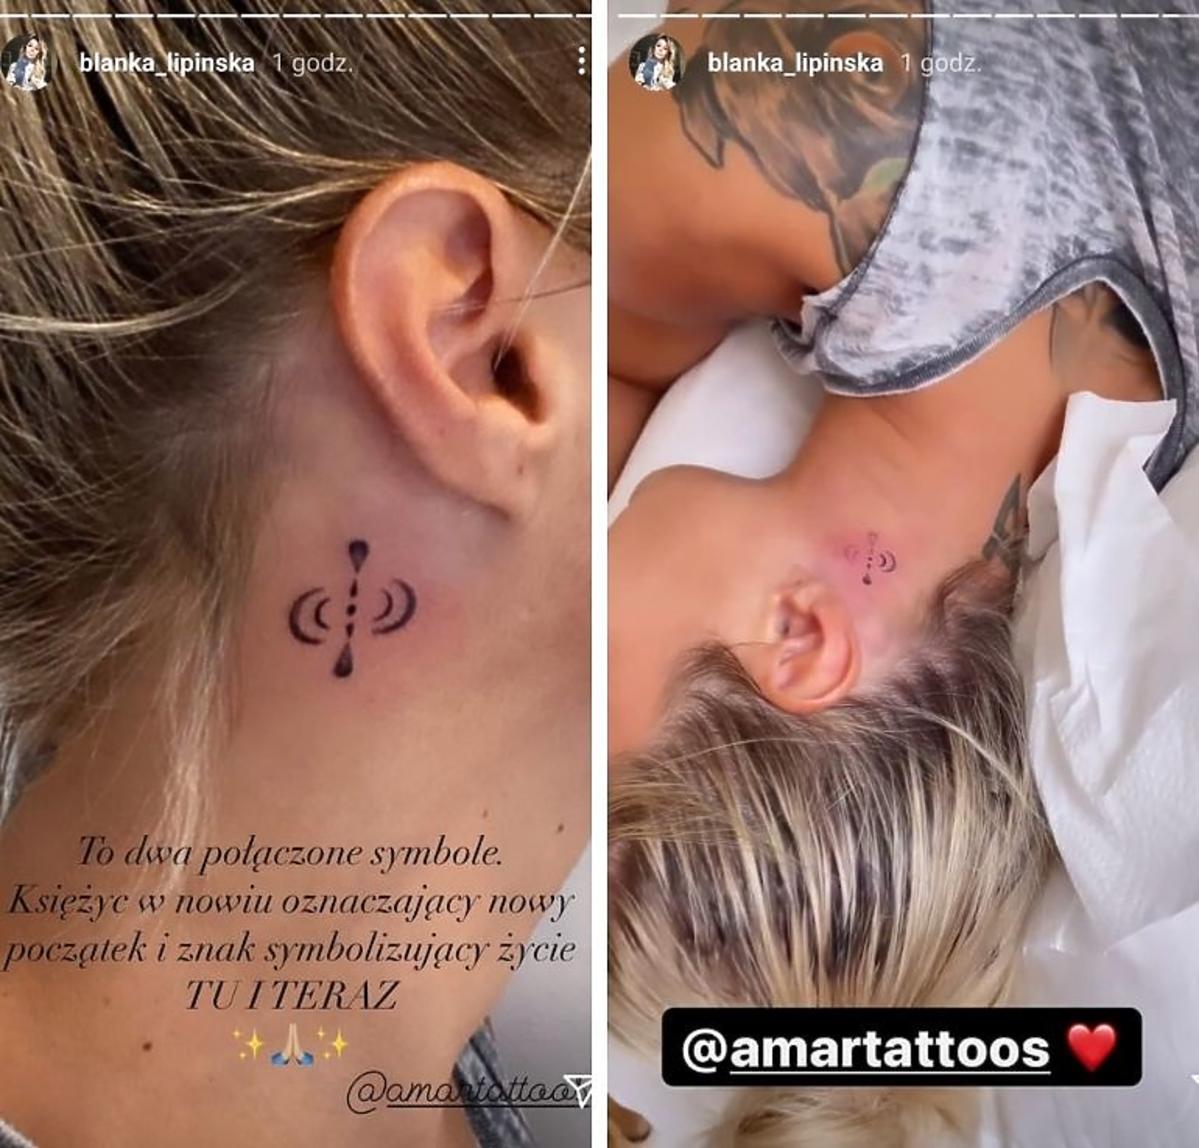 Blanka Lipińska pokazała nowy tatuaż